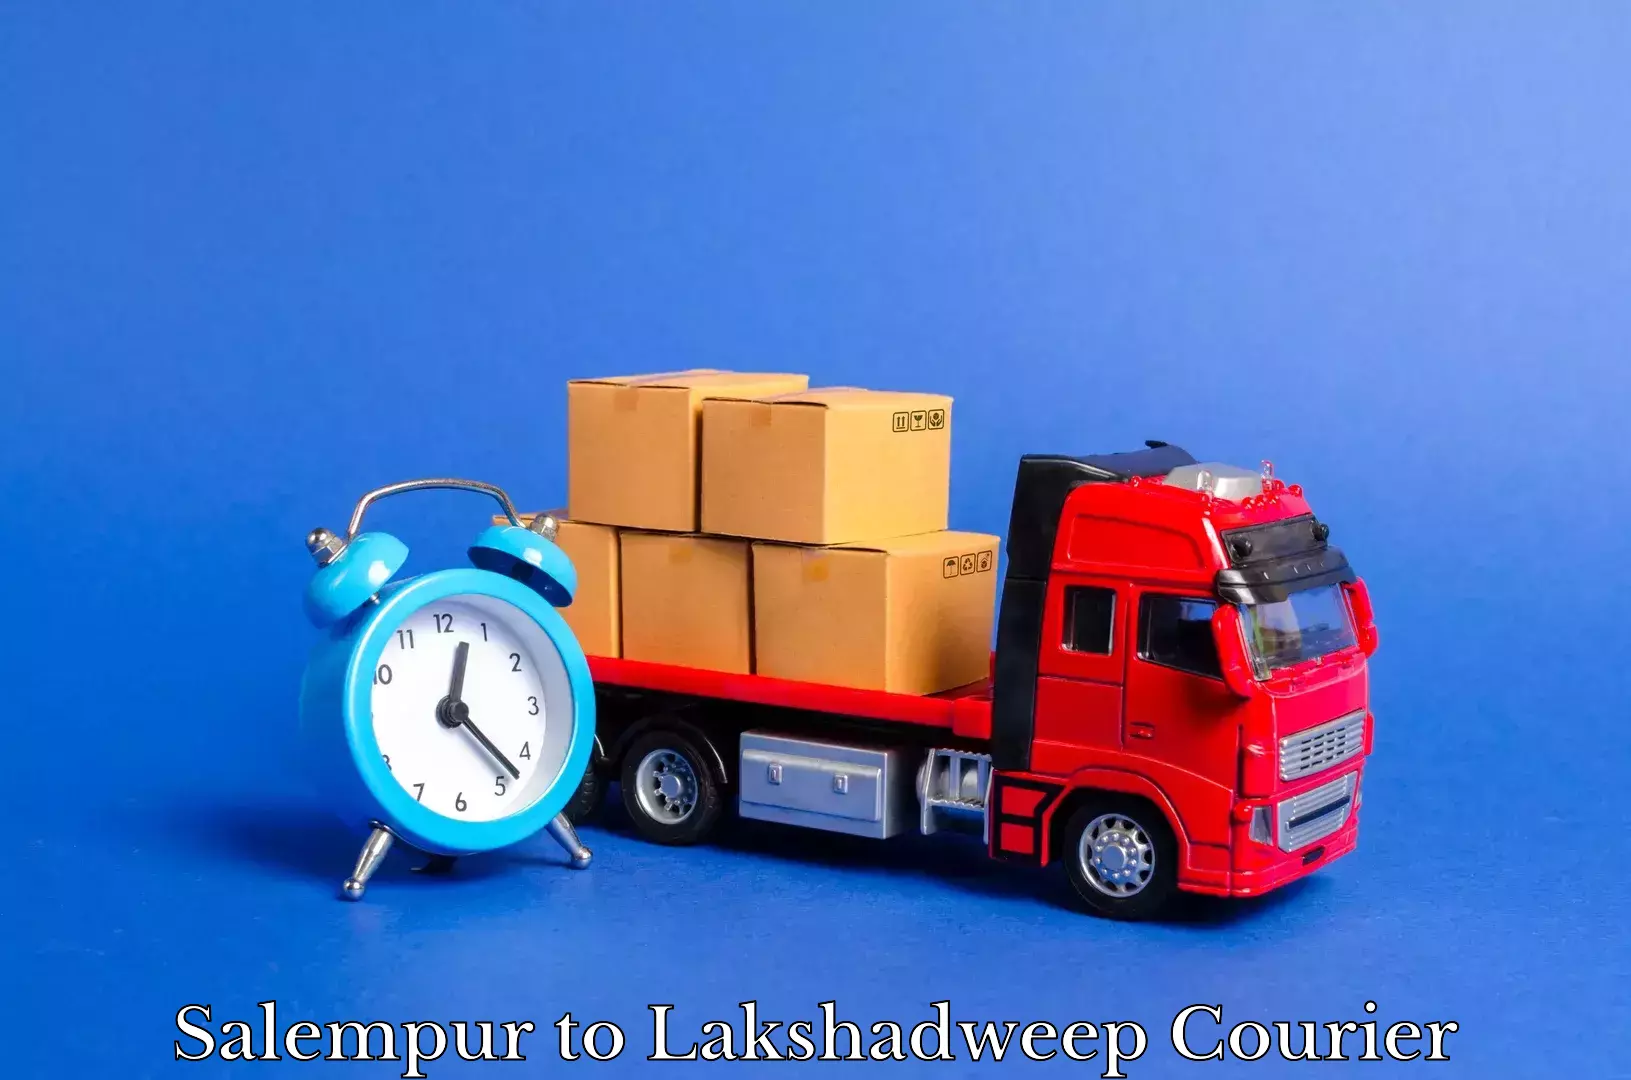 Household goods transporters Salempur to Lakshadweep